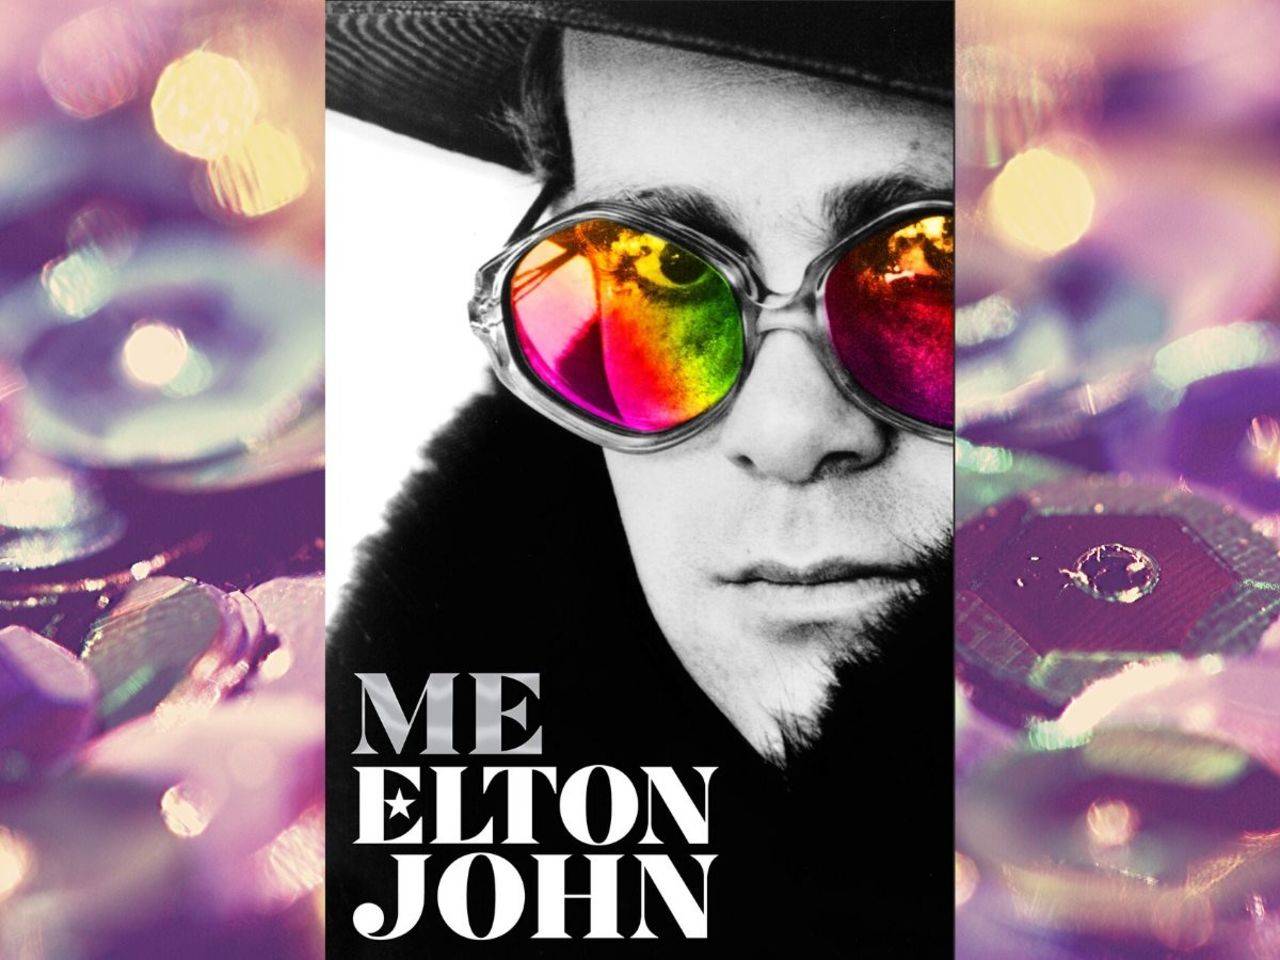 Elton John glasses: An evolution of the star's most outlandish